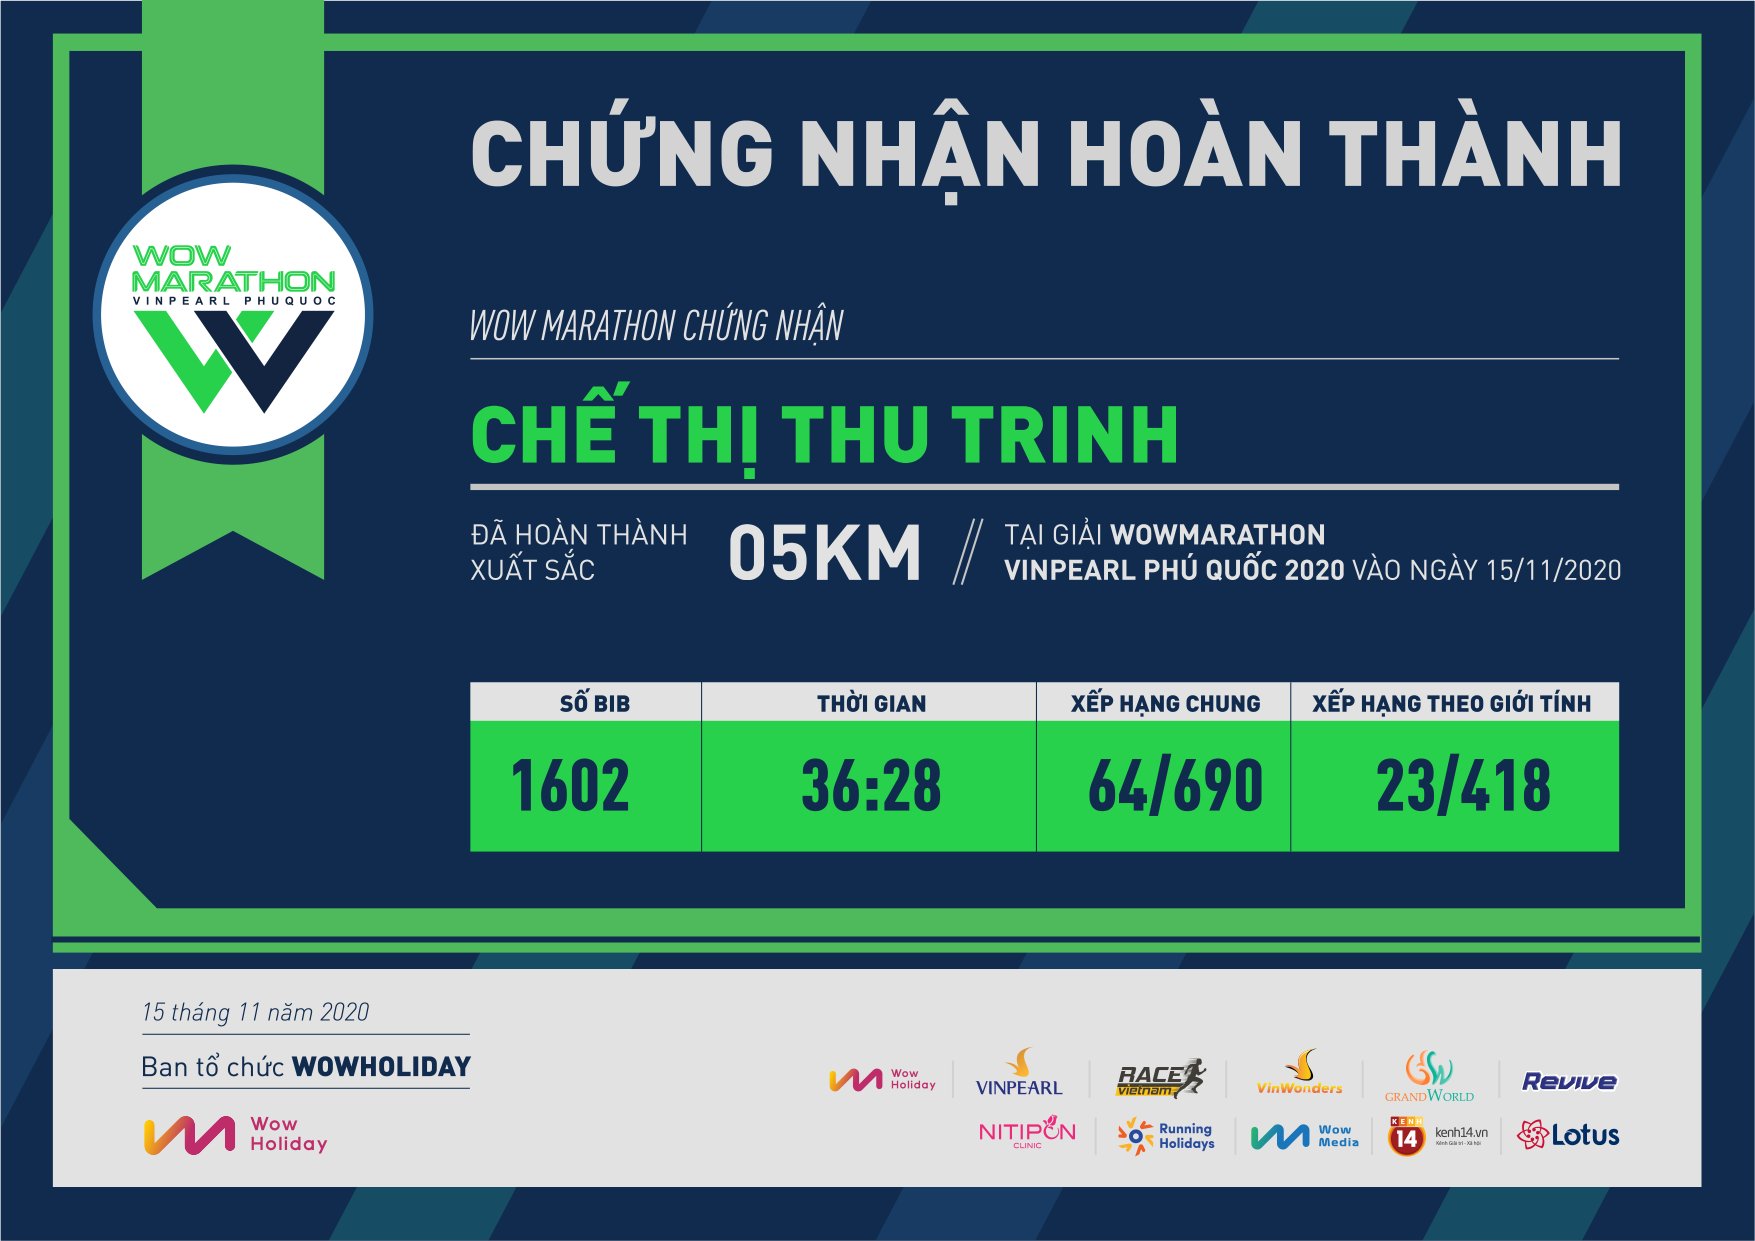 1602 - Chế Thị Thu Trinh